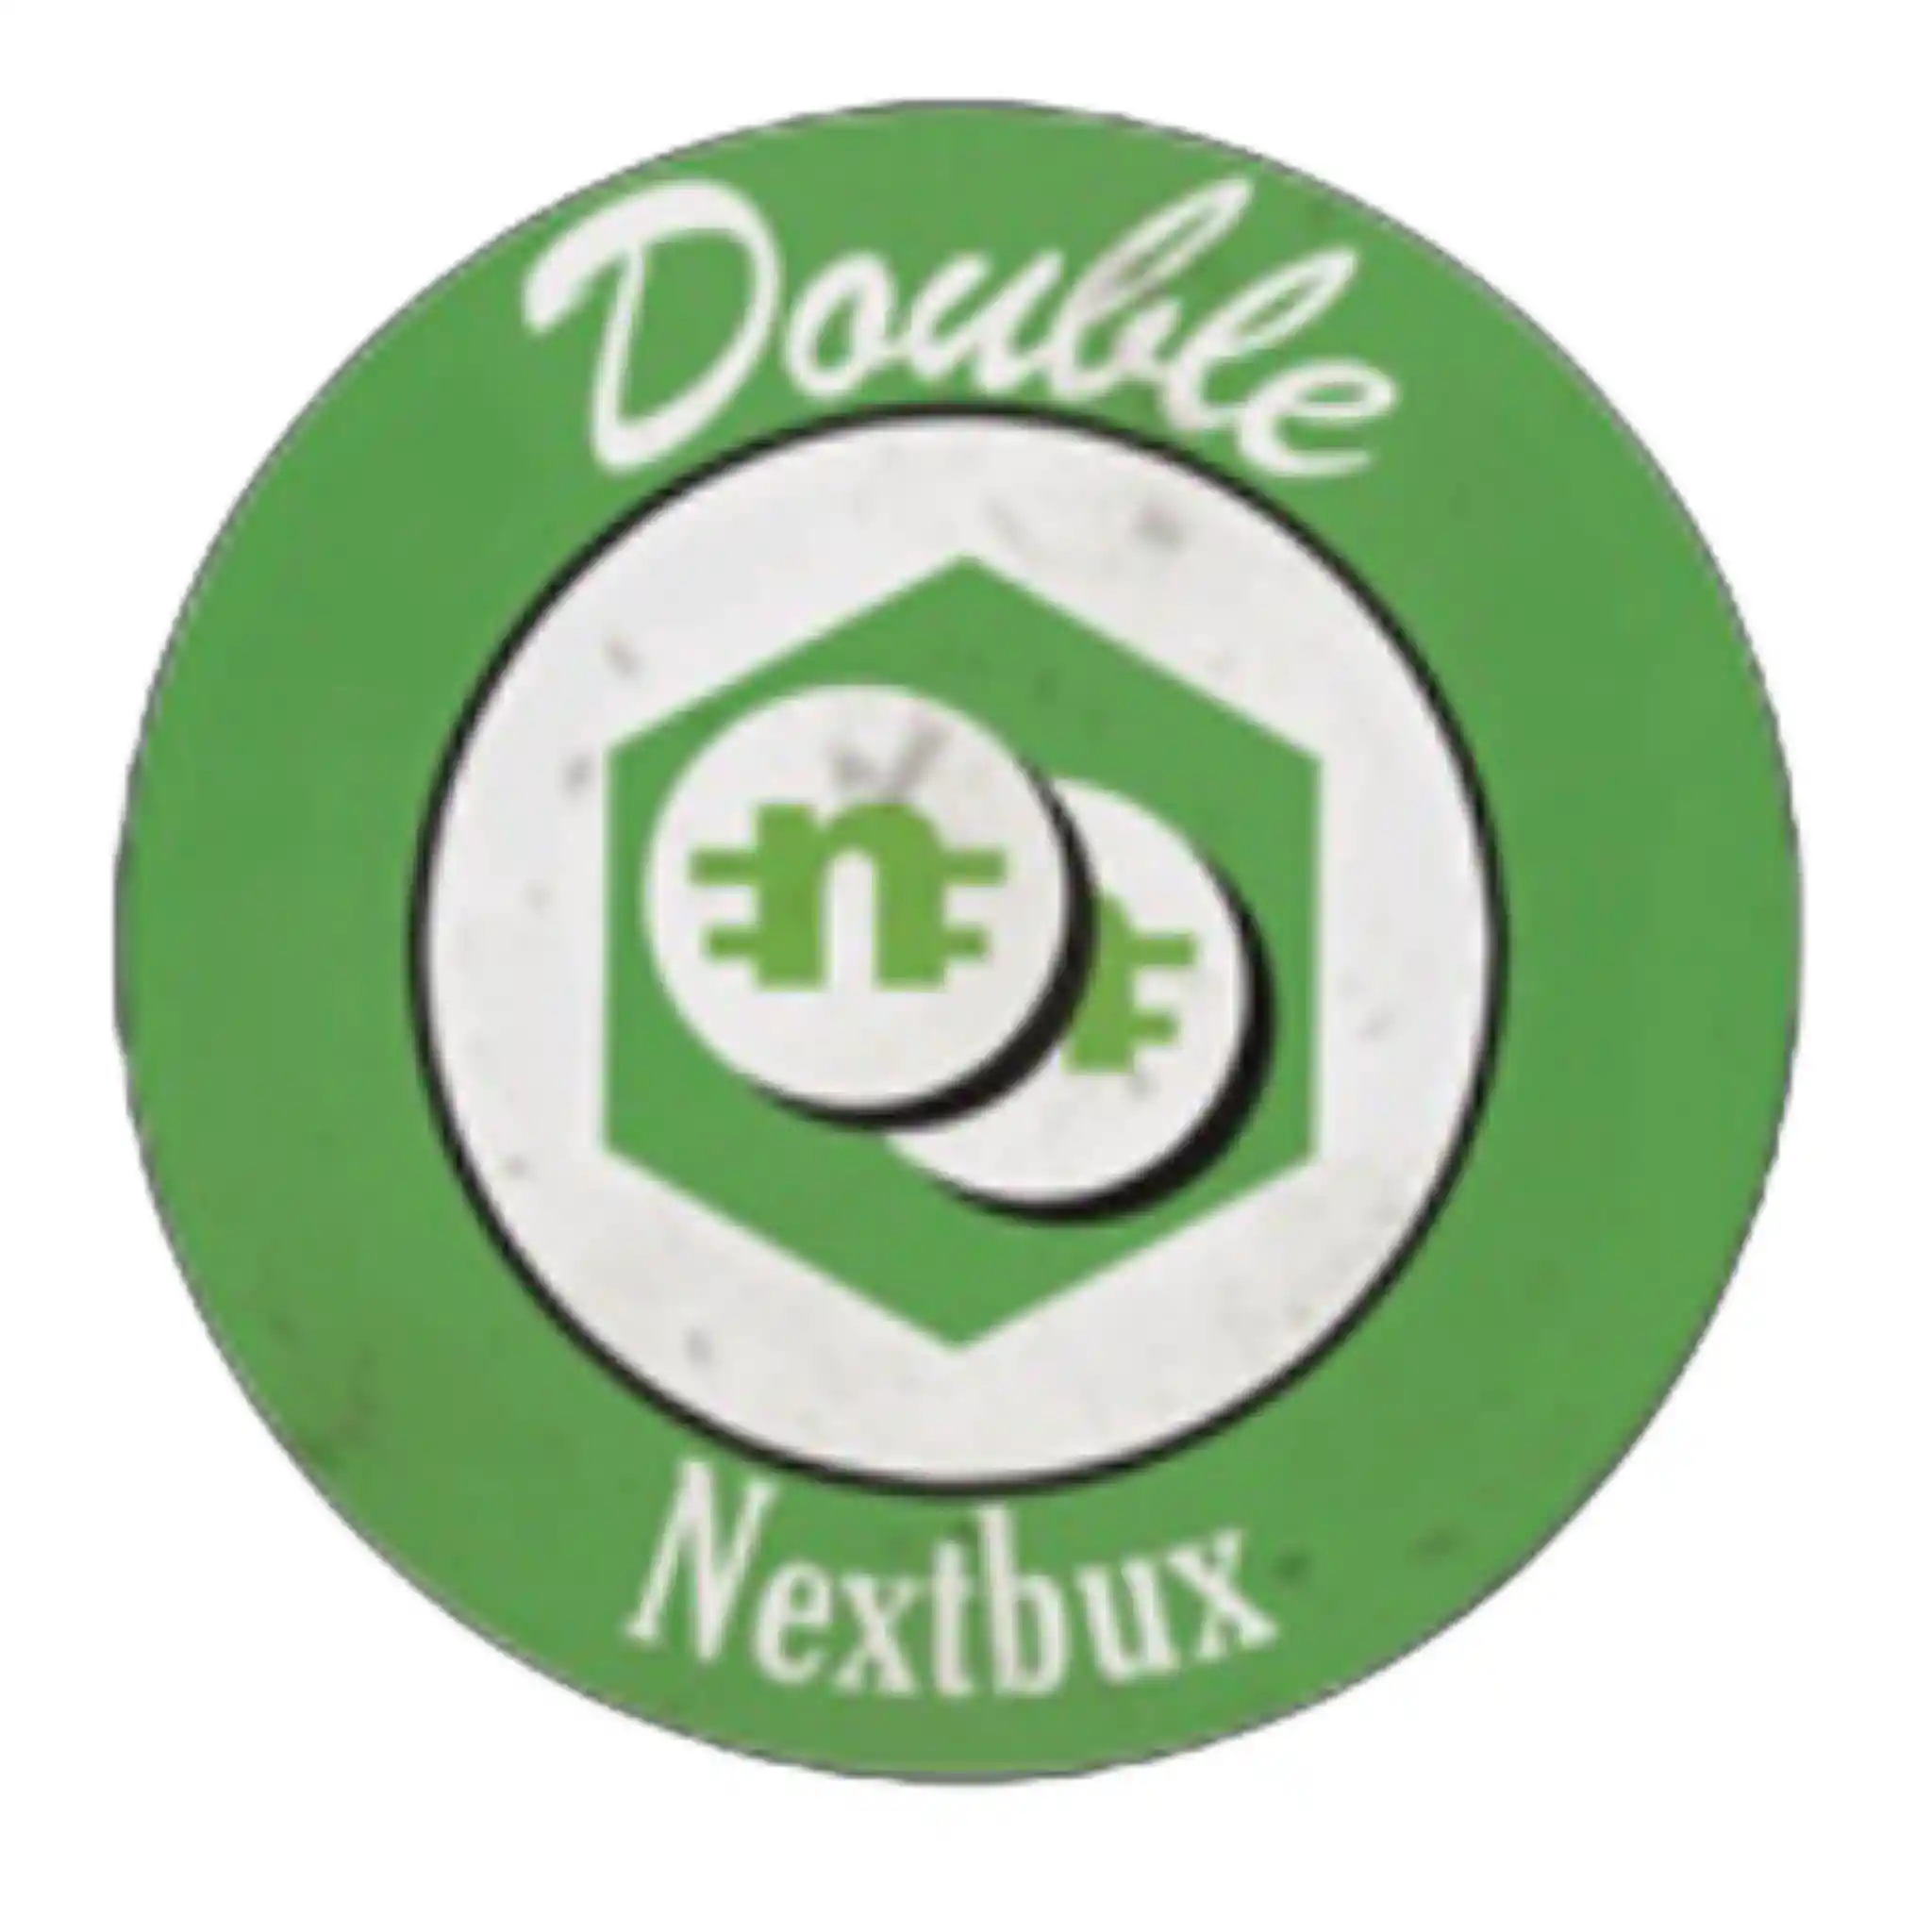 double nextbux icon.jpg